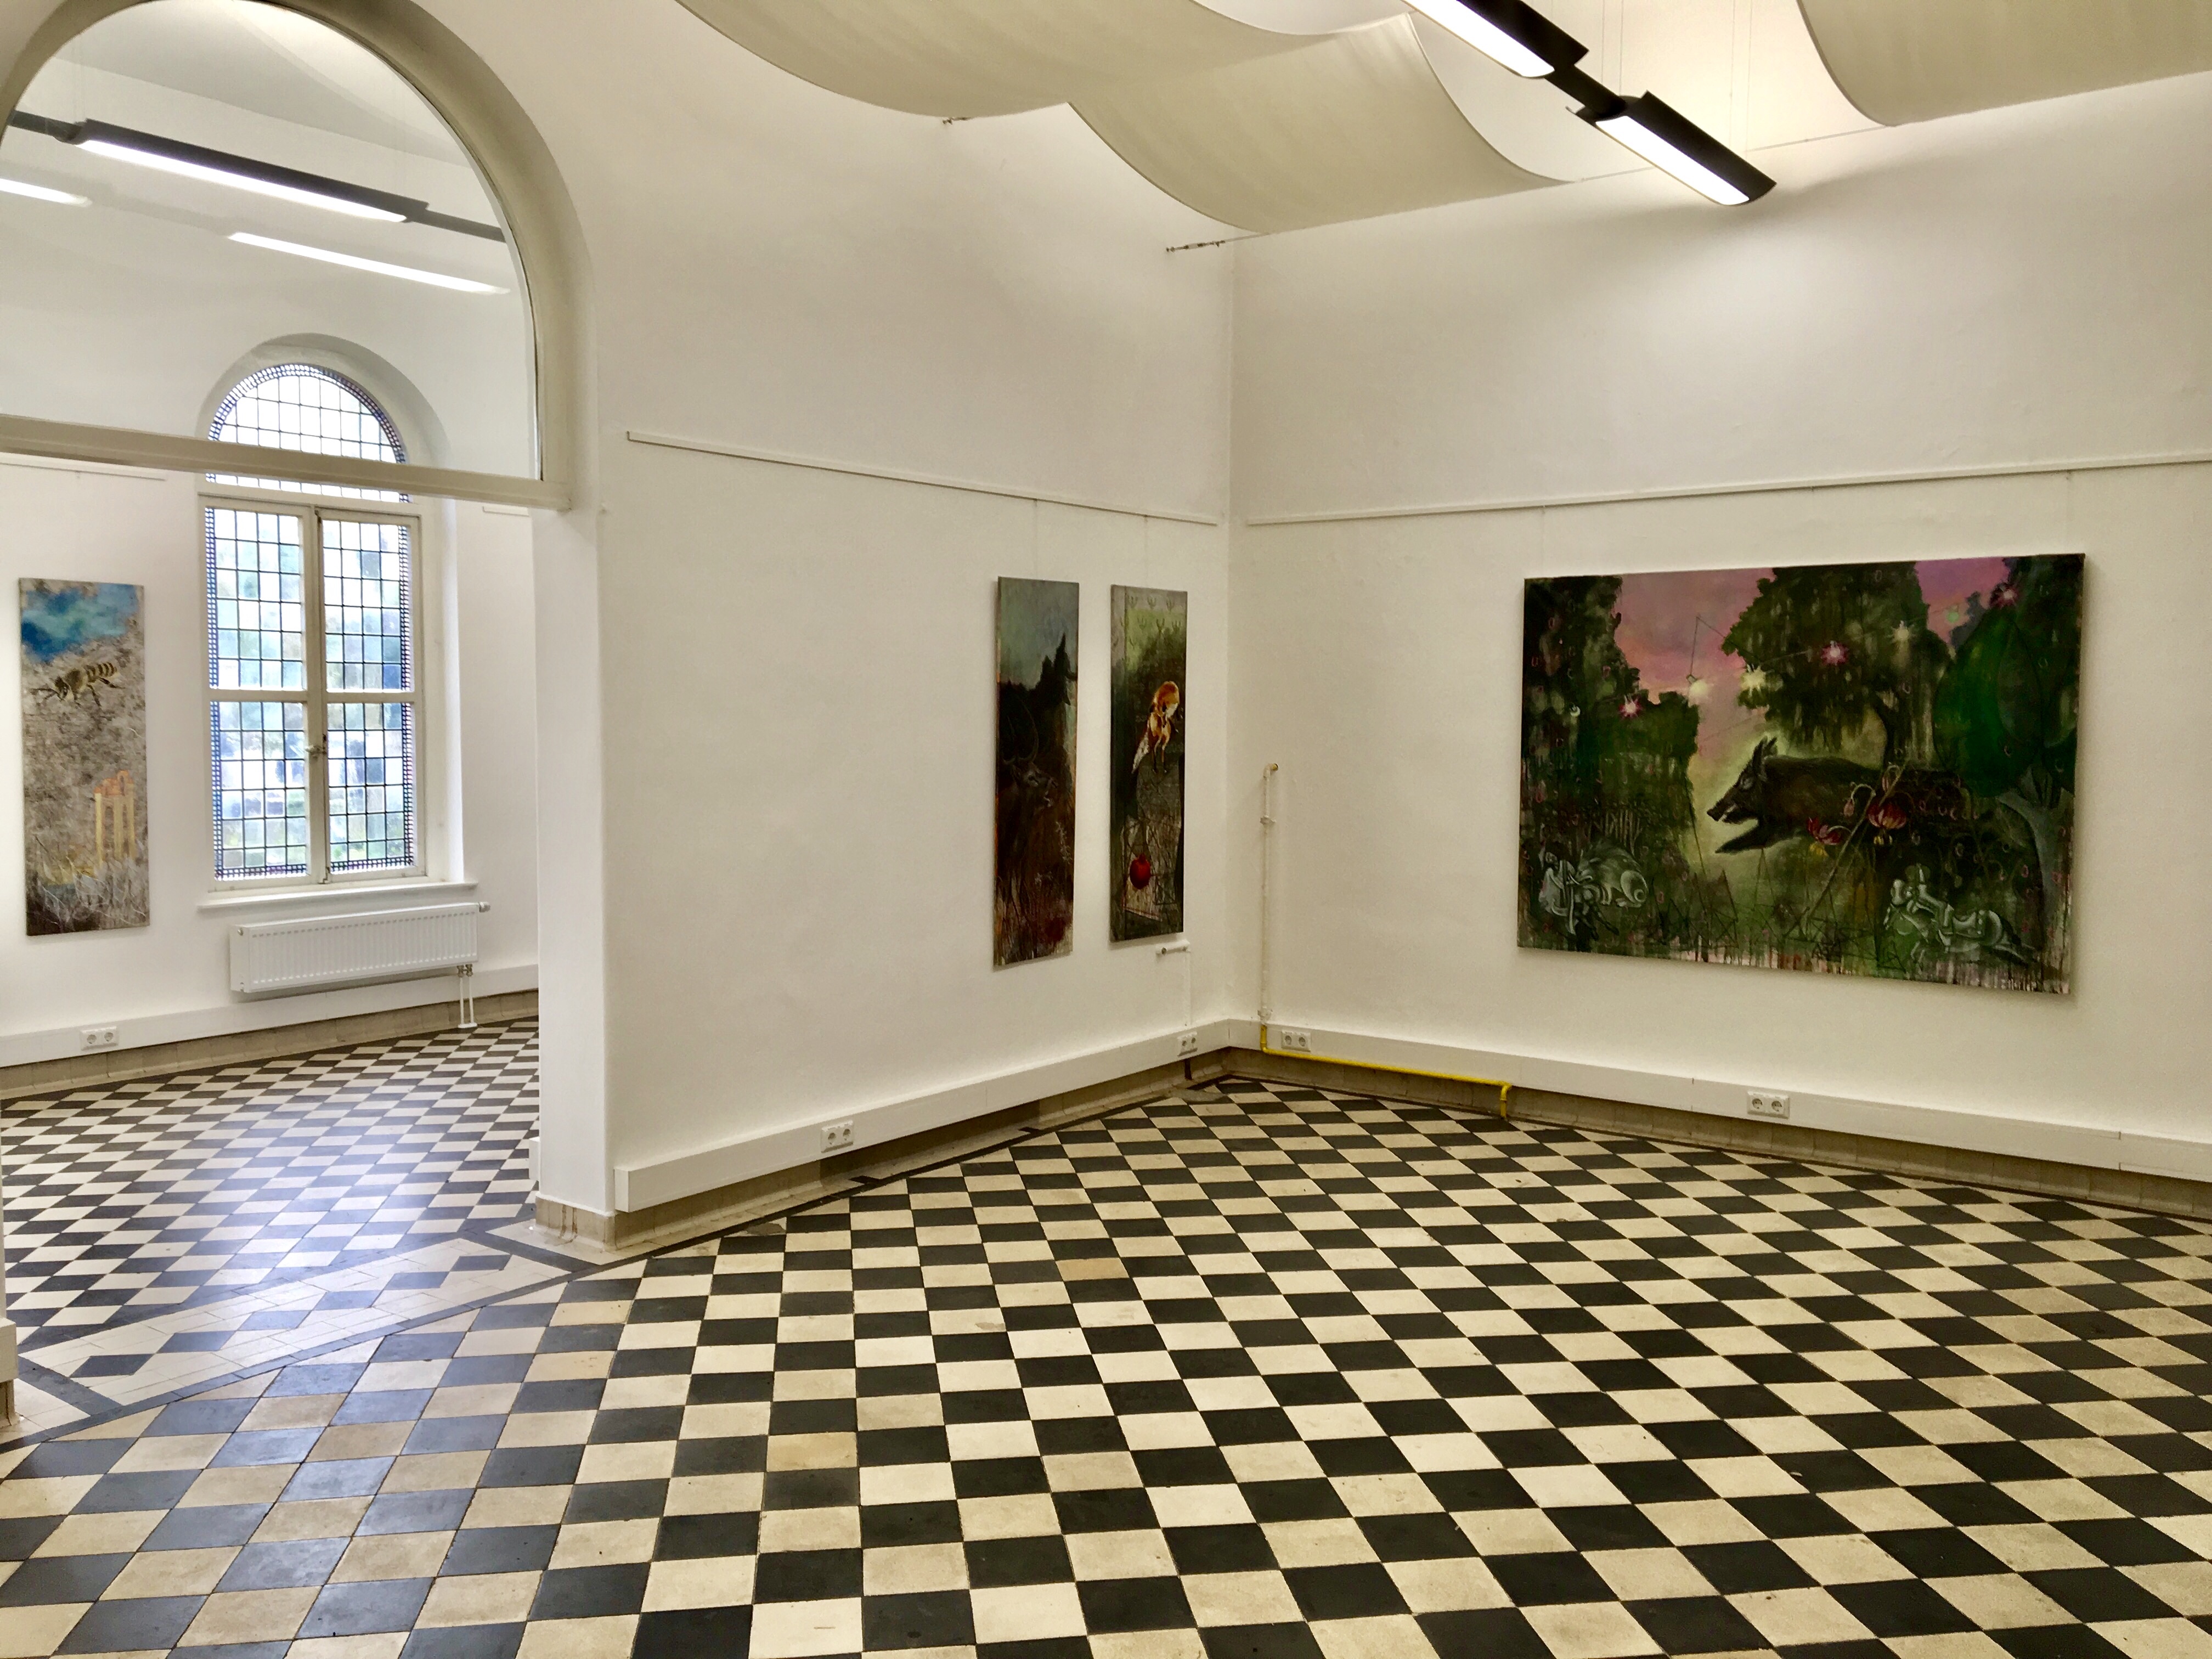 Galerie Alte Feuerwache, Göttingen, Germany 2017